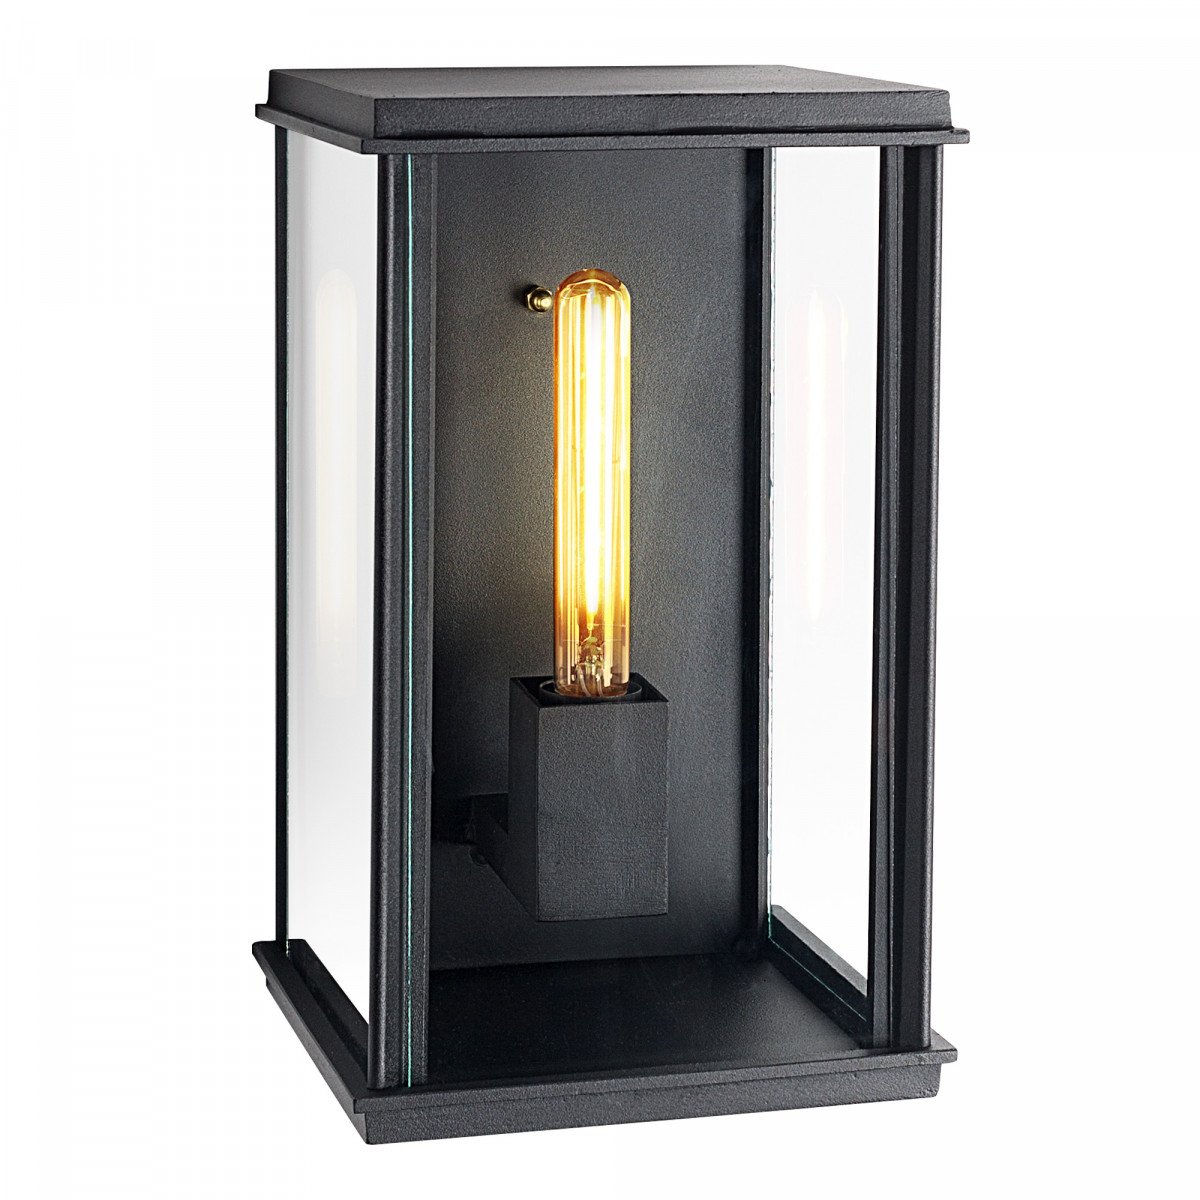 Buitenlamp Capital XL zwart exclusieve buitenverlichting strak klassiek van KS Verlichting met de hand vervaardigde wandverlichting van hoge kwaliteit